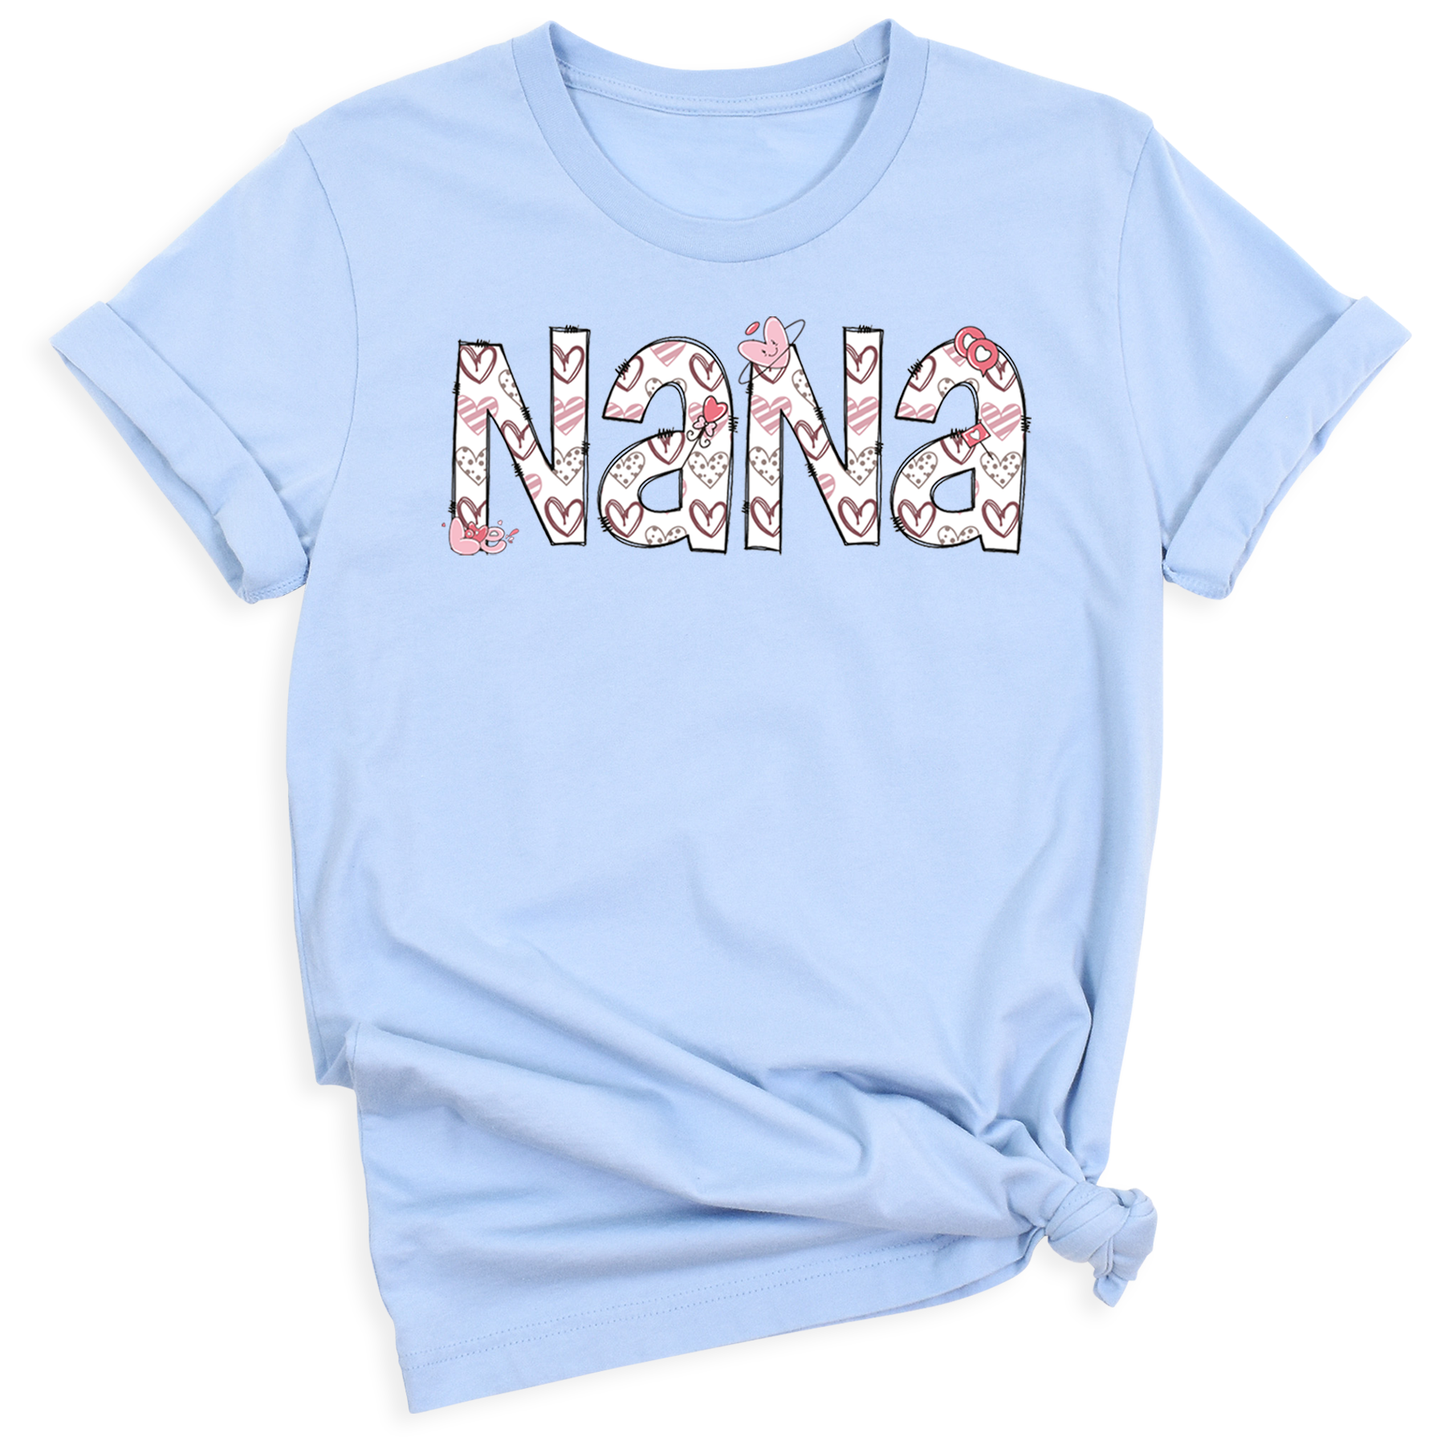 Nana Tee